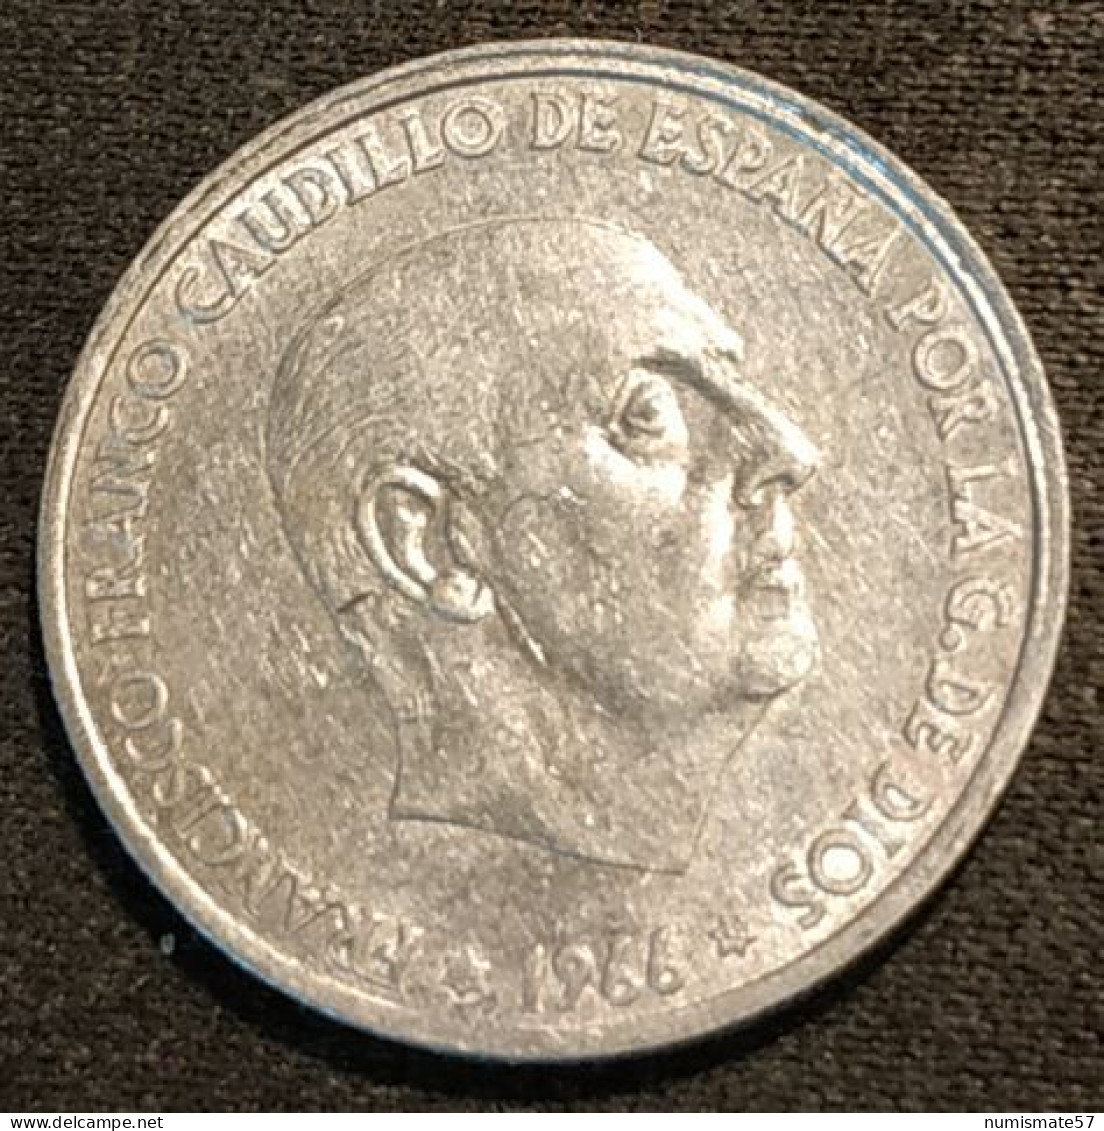 ESPAGNE - ESPANA - SPAIN - 50 CENTIMOS 1966 ( 1968 ) - Franco - KM 795 - 50 Centiem